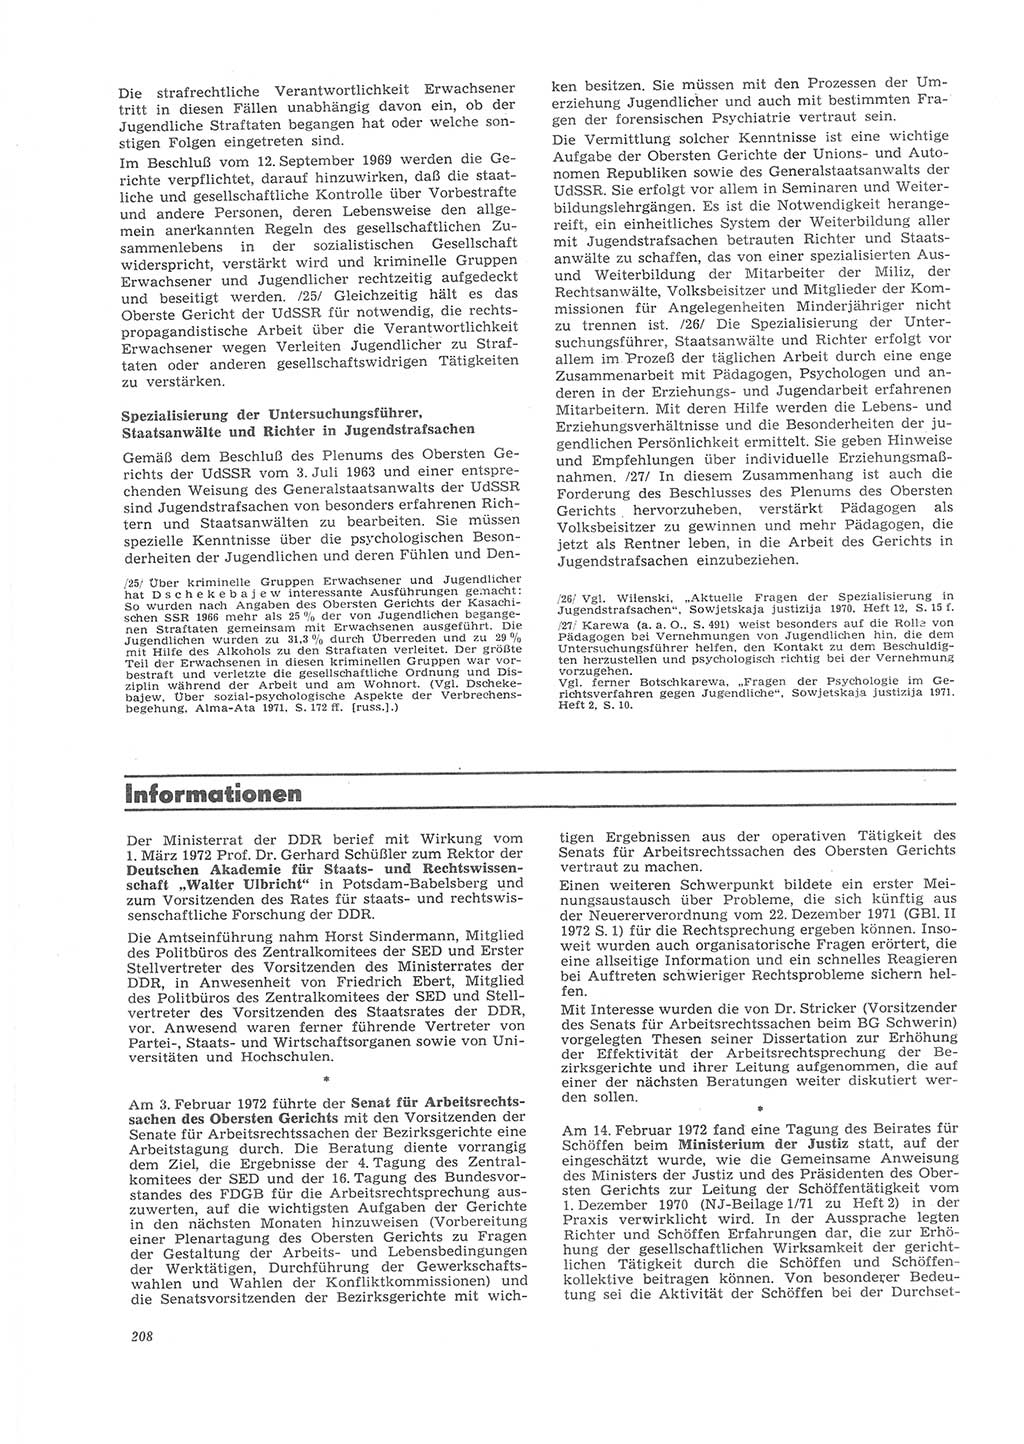 Neue Justiz (NJ), Zeitschrift für Recht und Rechtswissenschaft [Deutsche Demokratische Republik (DDR)], 26. Jahrgang 1972, Seite 208 (NJ DDR 1972, S. 208)